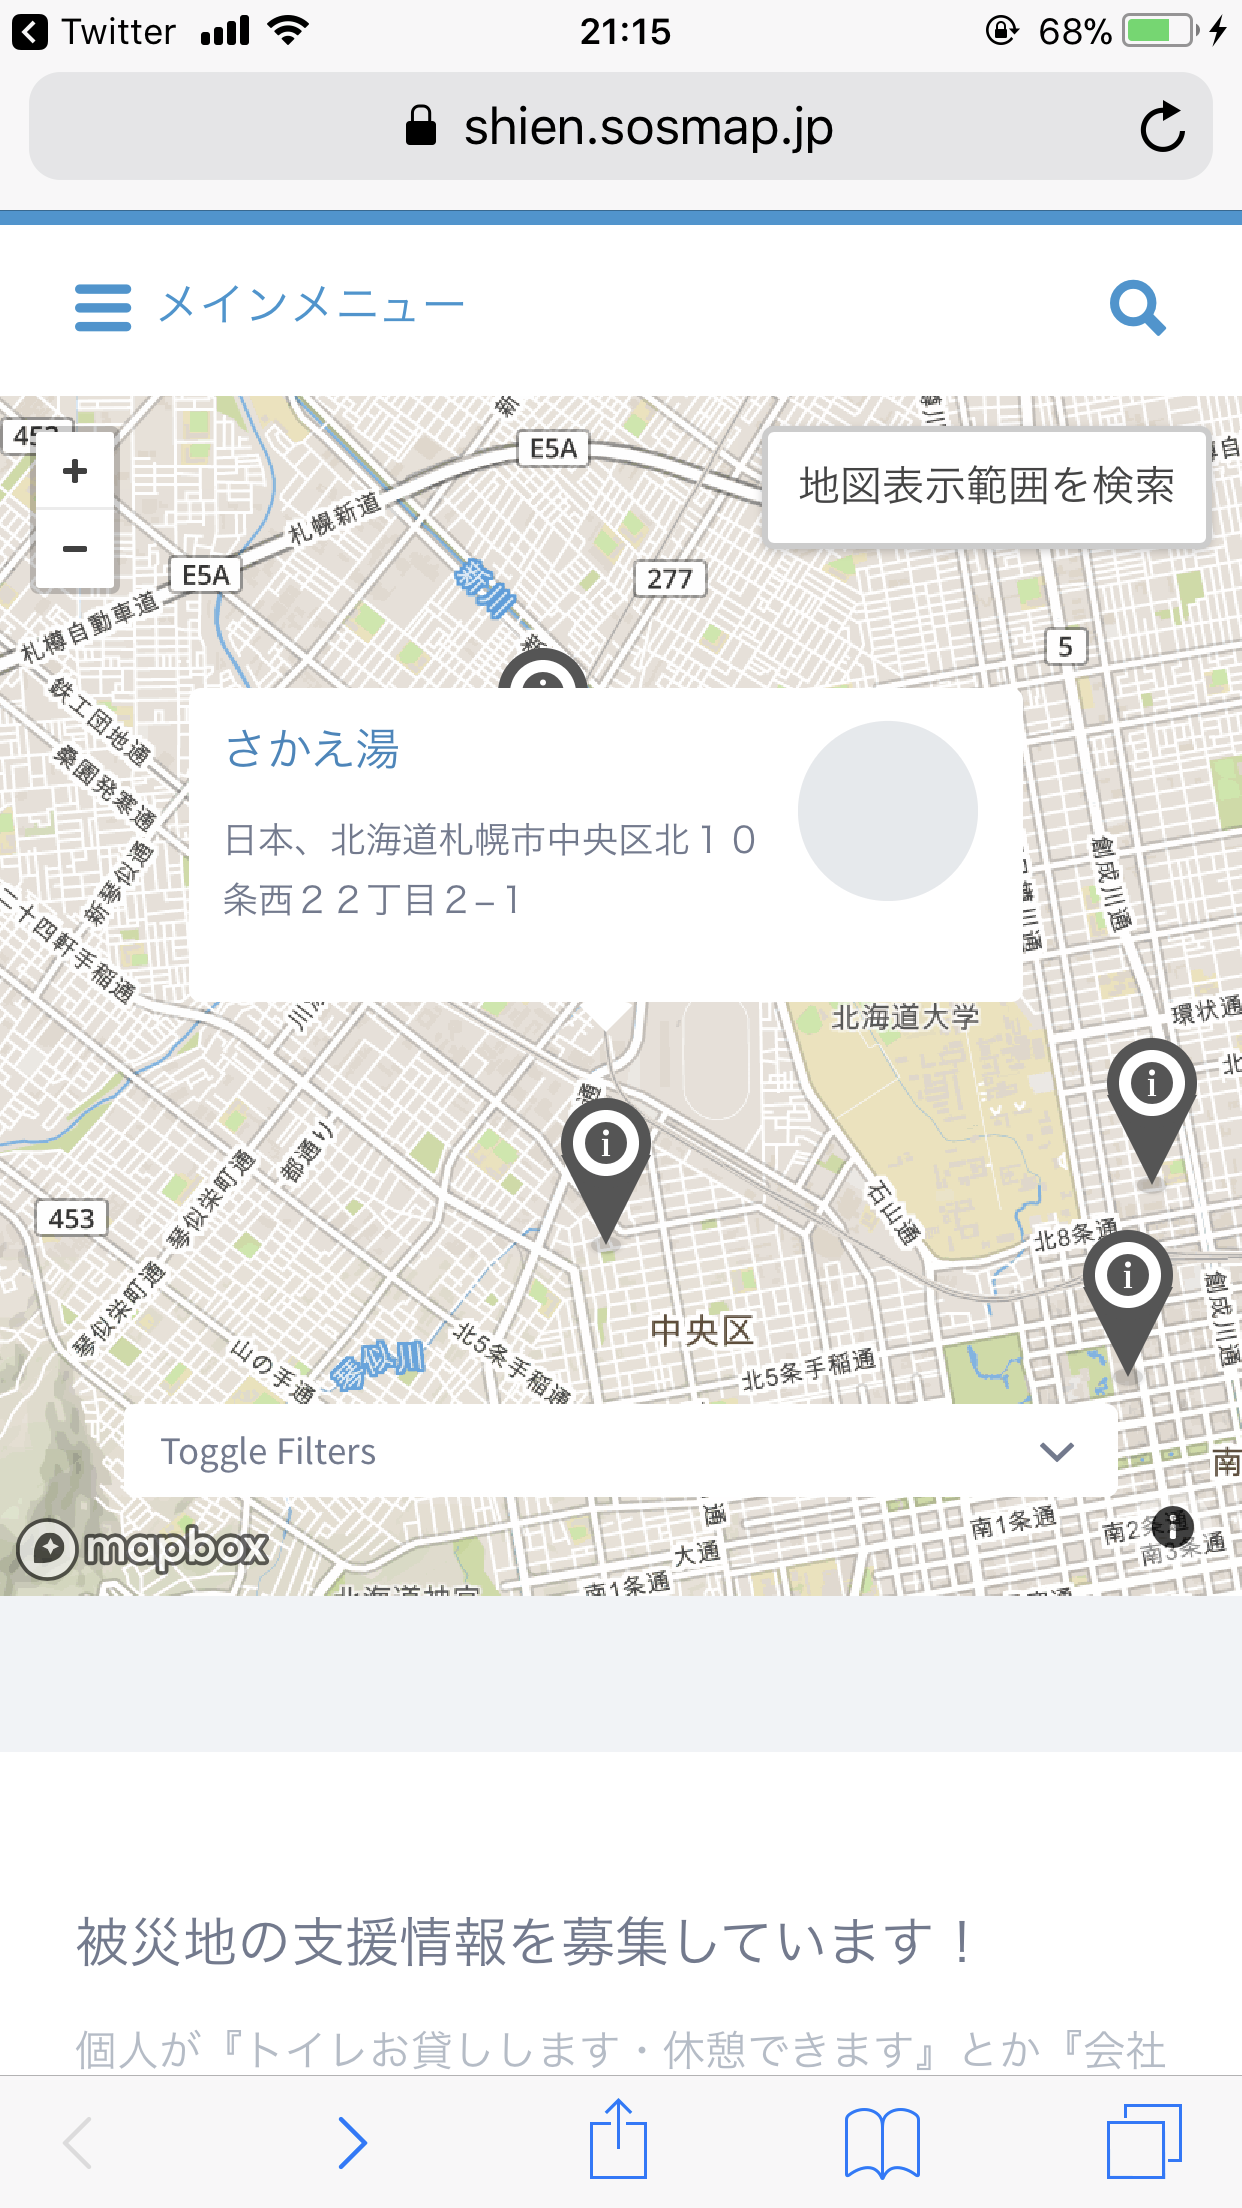 北海道地震支援マップの黒いピン留めを選択すると、施設名が表示される